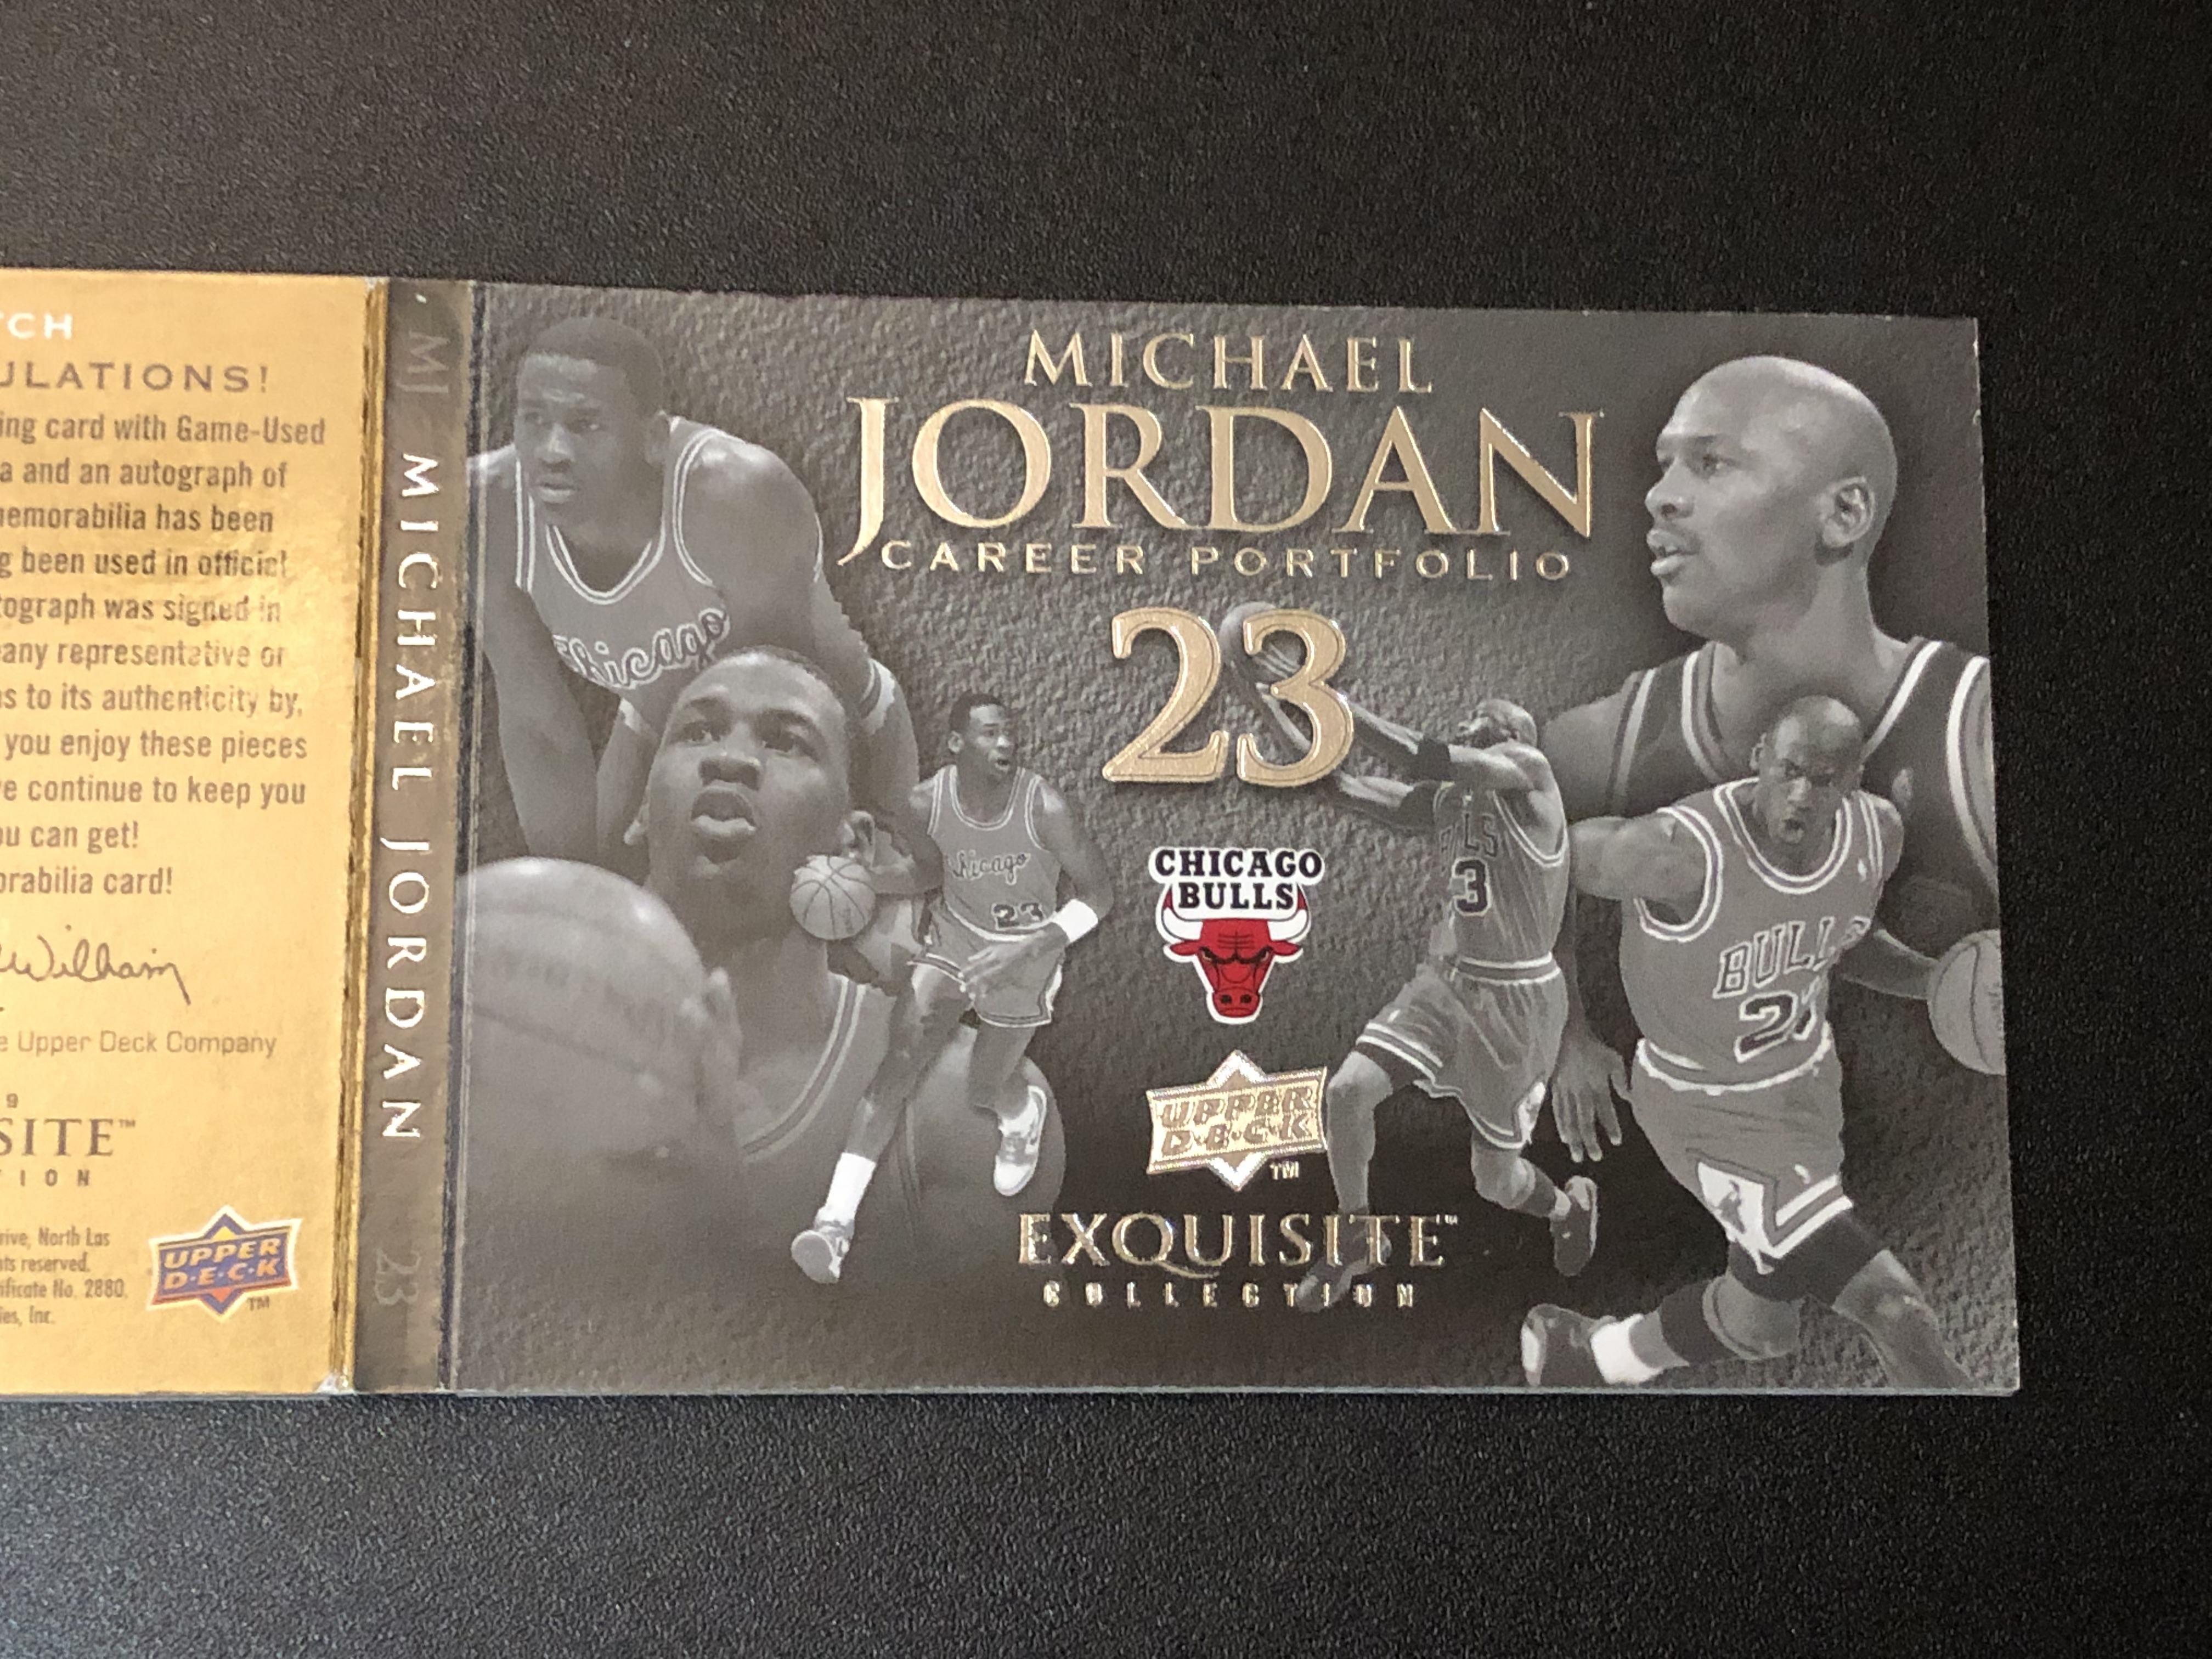 【喷子拍卖】2008-09 upper deck exquisite Michael Jordan 木盒 公牛 迈克尔 乔丹 生涯荣誉 patch 签字 小书 一编 1of1 手写编 卡签 系列hit 1号卡 顶级藏品 ACCB